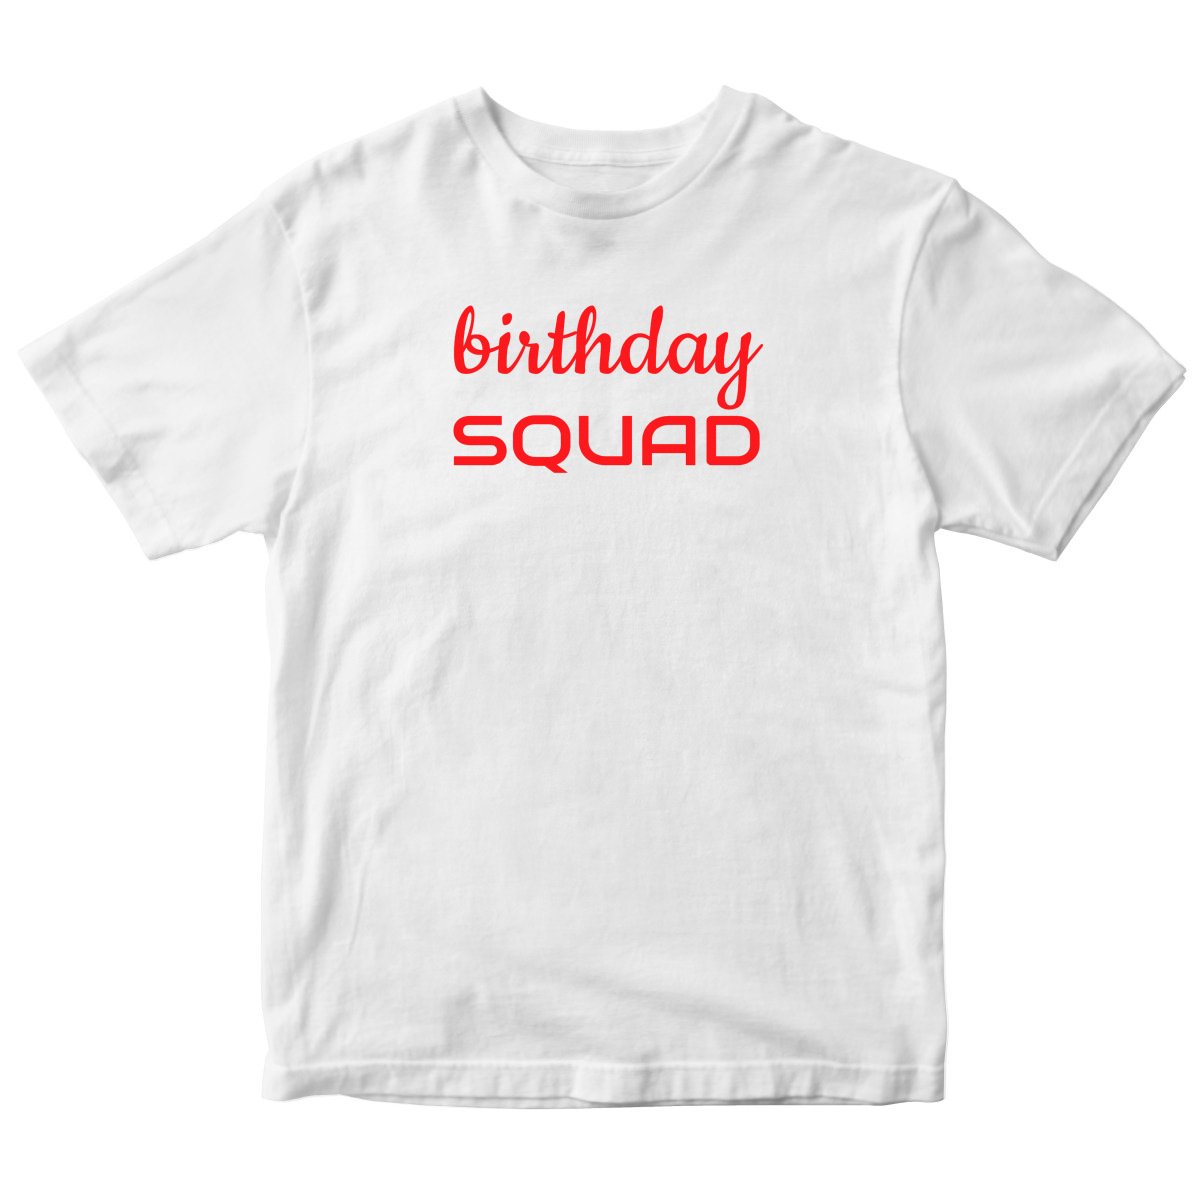 Birthday SQUAD Kids T-shirt | White